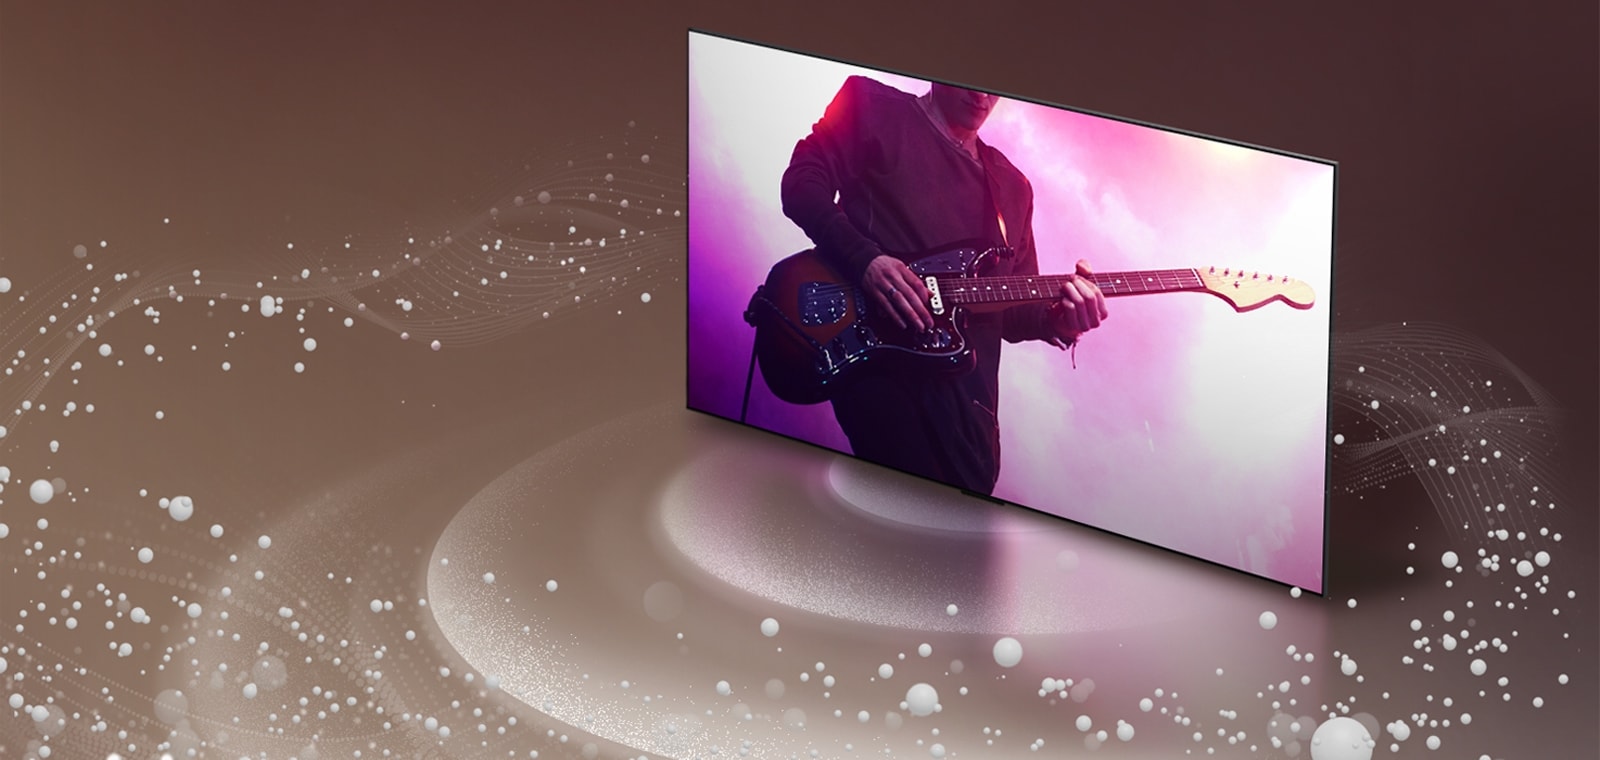 LG OLED TV, ko zvočni mehurčki in valovi oddajajo zaslon in zapolnijo prostor.